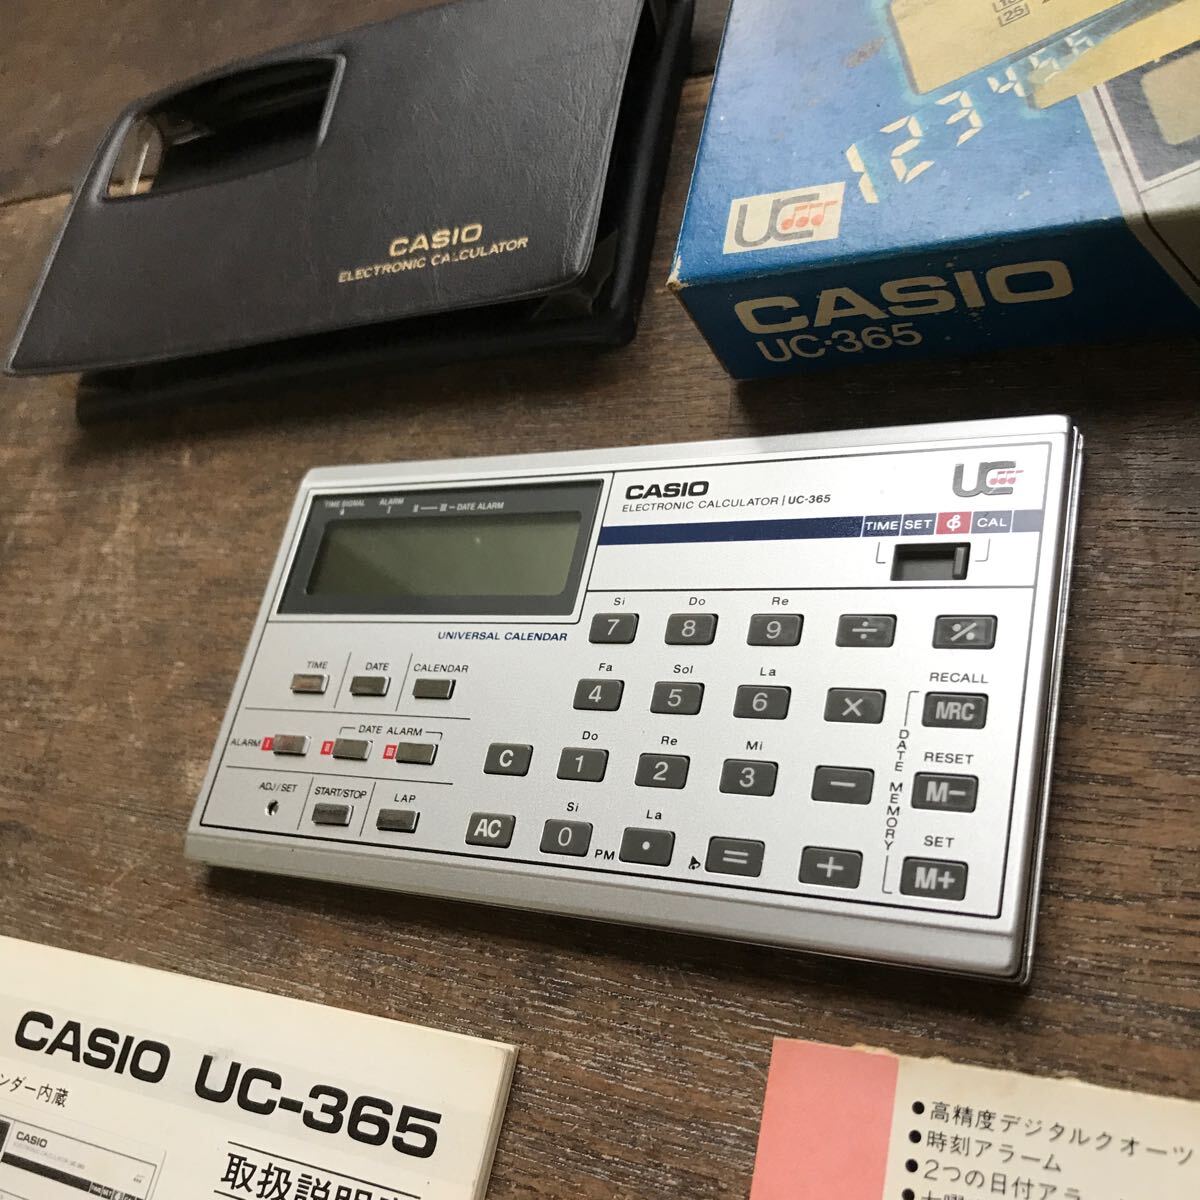 CASIO Casio UC-365 калькулятор подлинная вещь рабочий товар инструкция с коробкой Showa Retro Vintage 